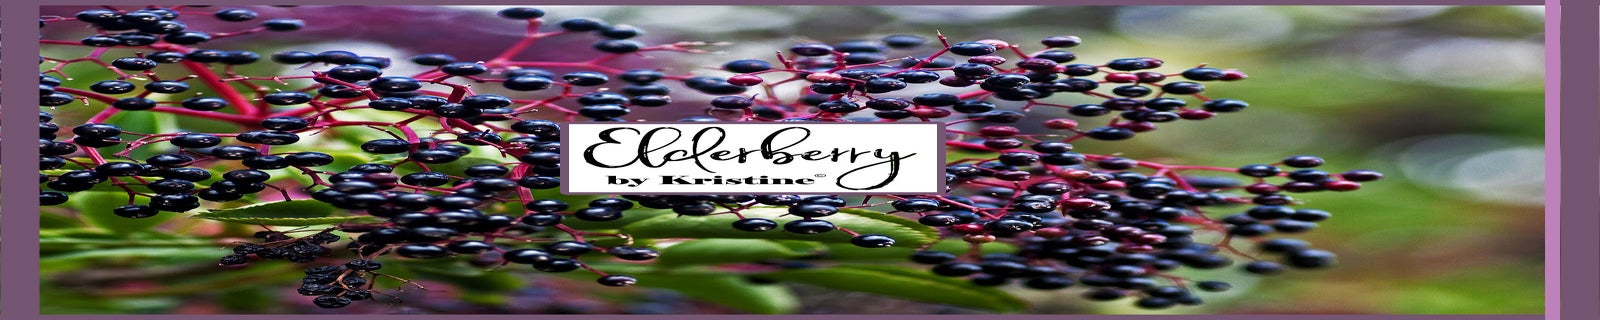 Elderberry Hot Chocolate – G.R.A.C.E. Elderberry Co. LLC